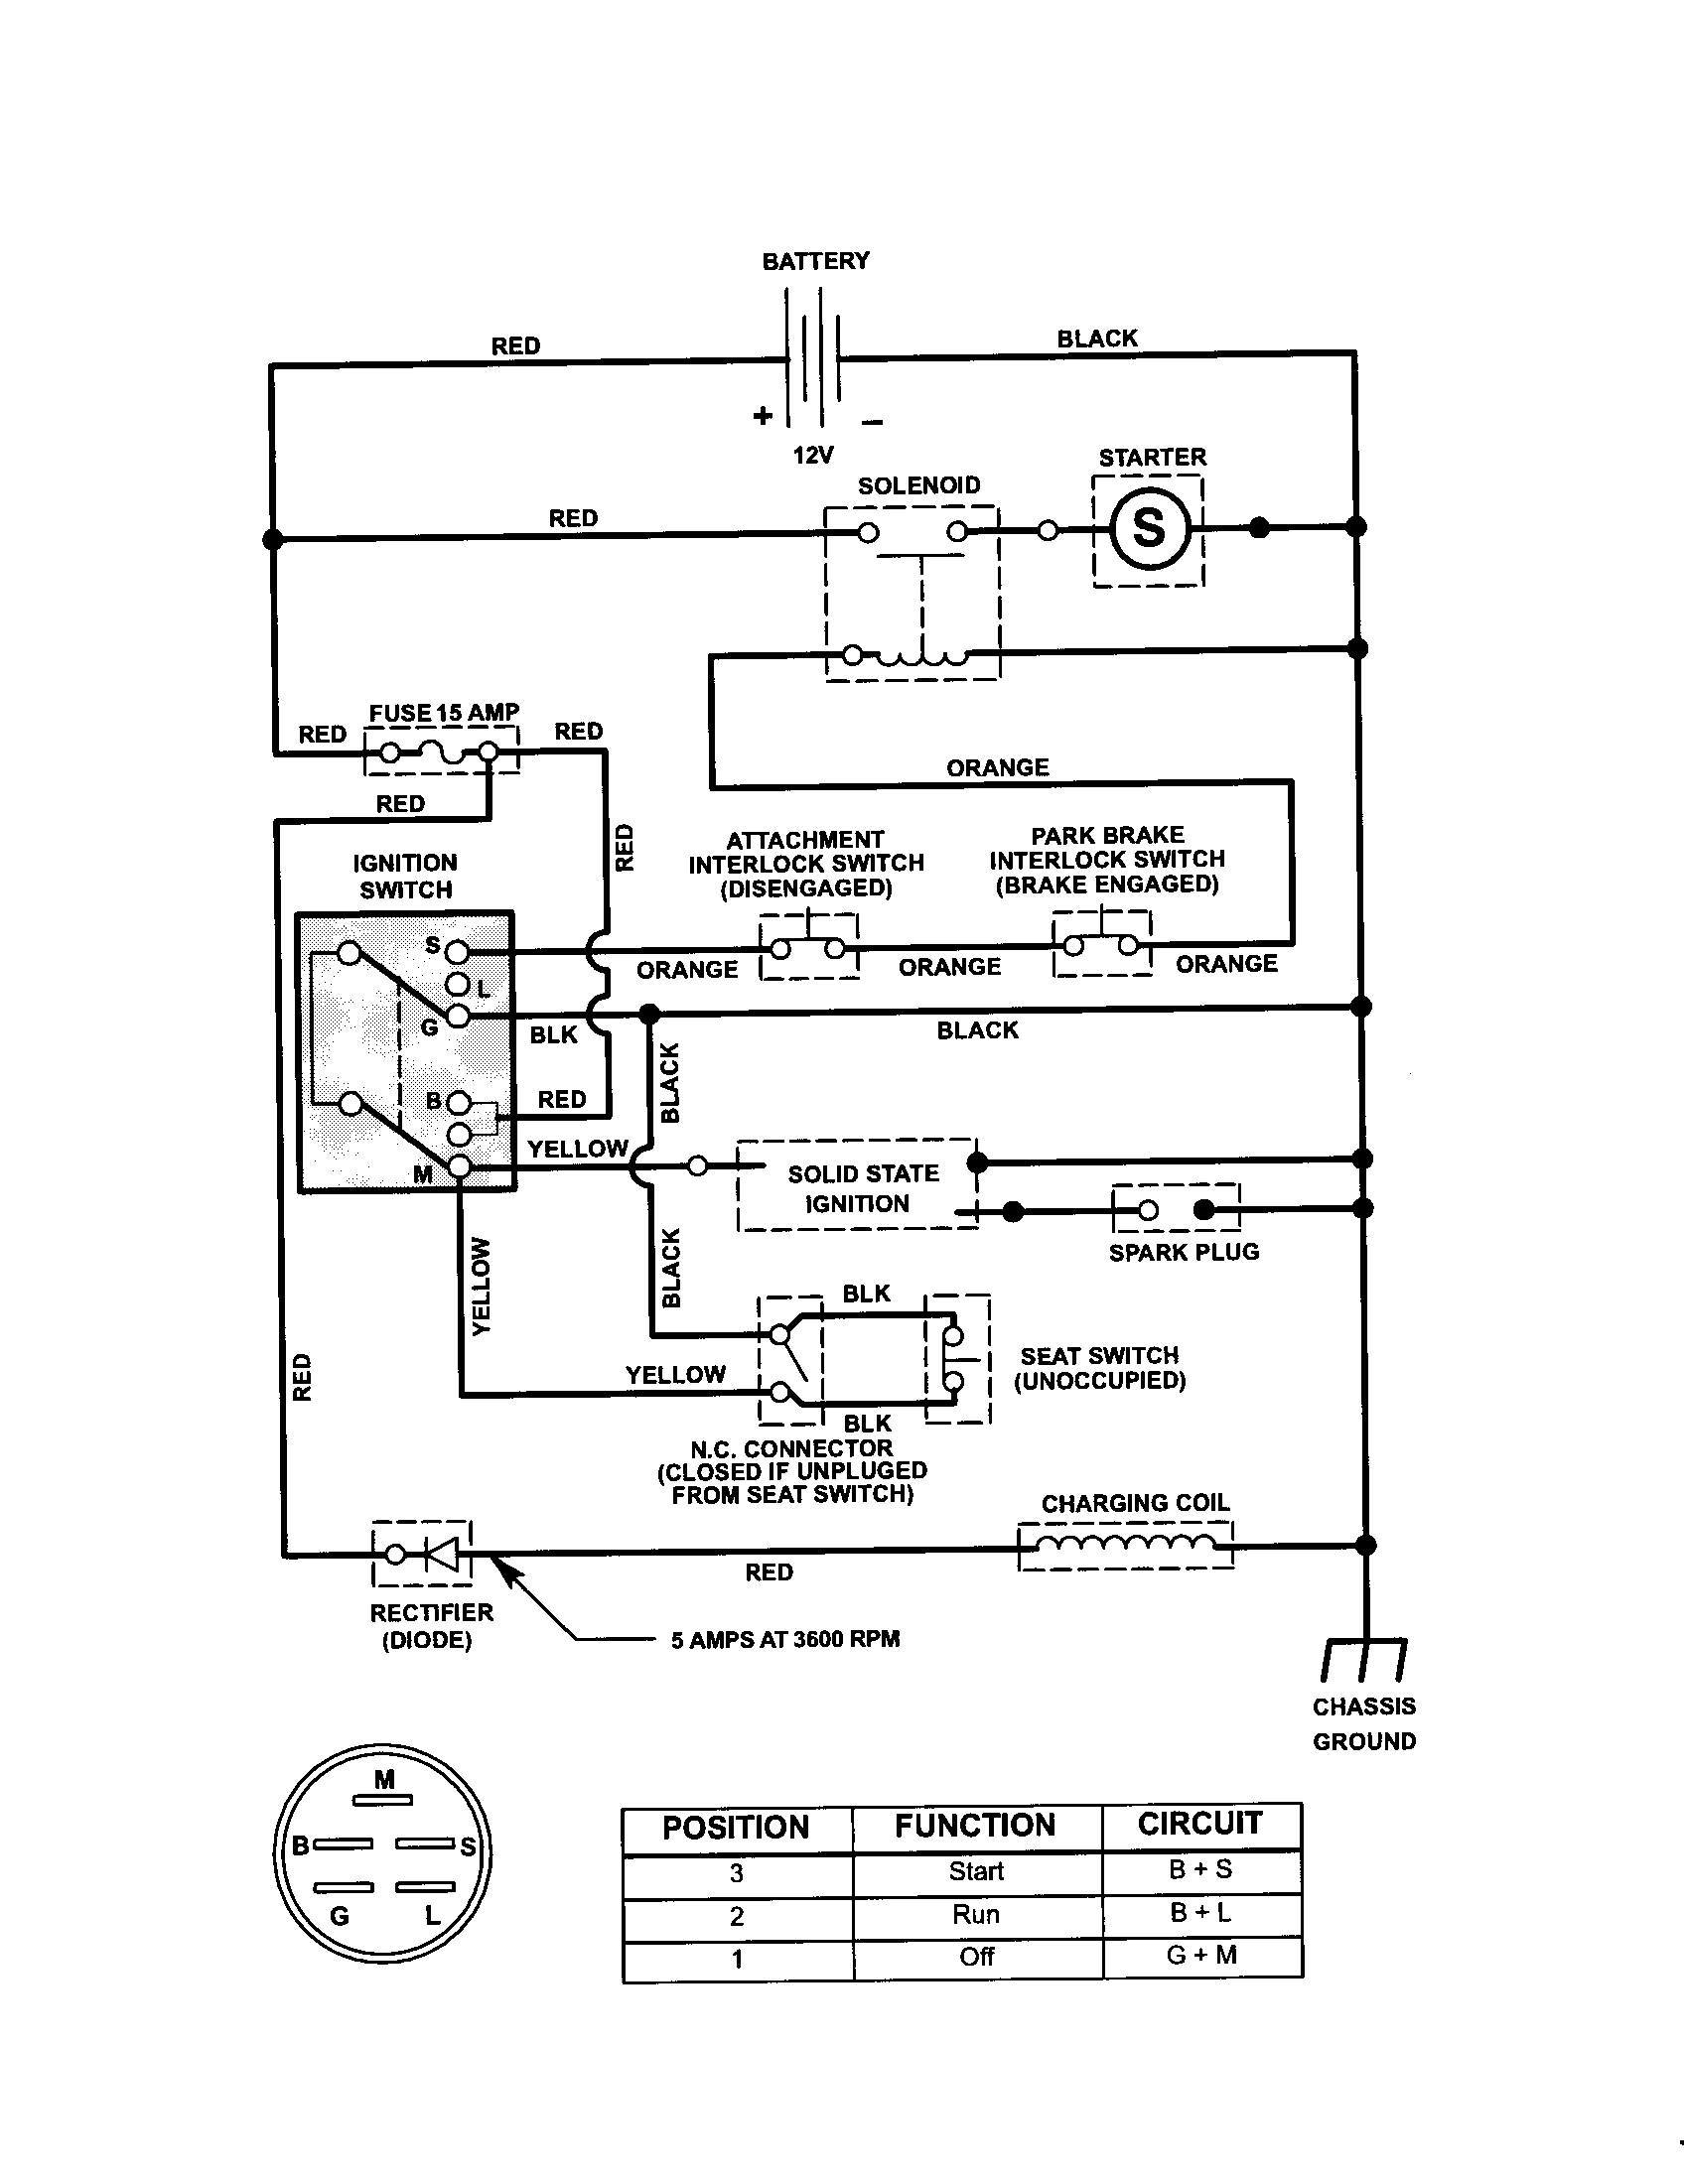 Craftsman Riding Mower Electrical Diagram | Pictures Of Craftsman - Kohler Engine Wiring Diagram